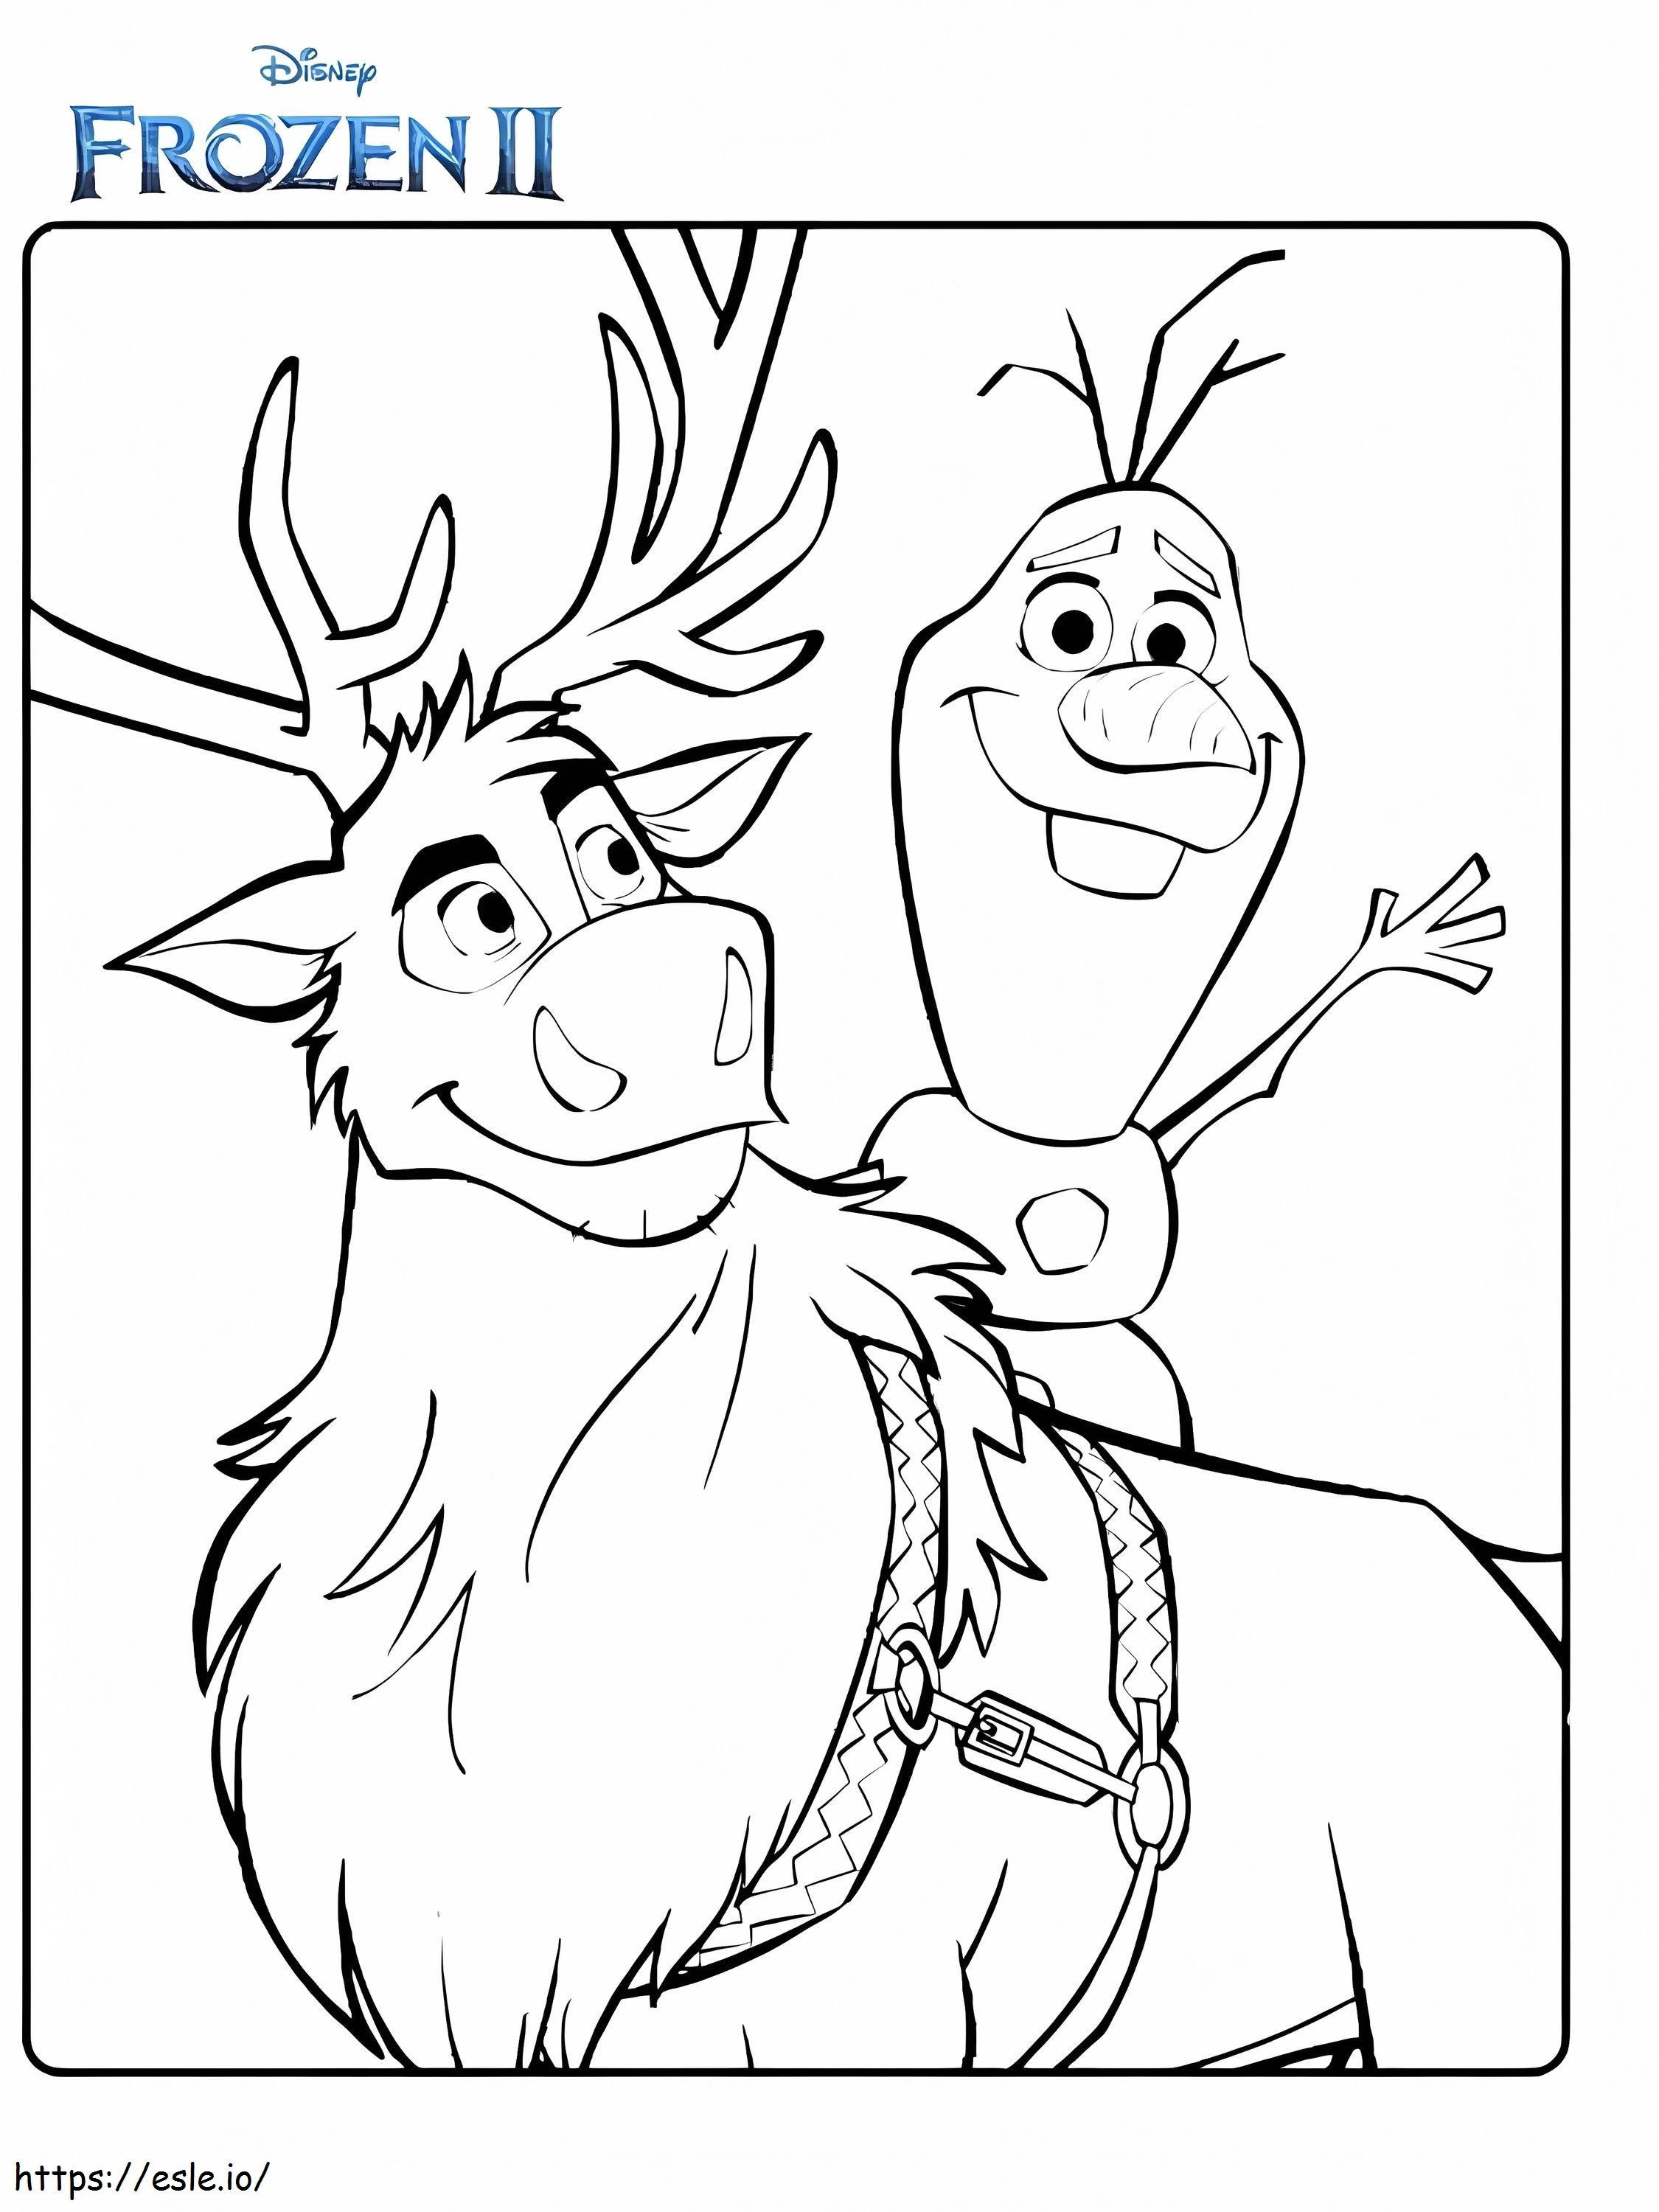 Olaf és Sven Frozen 2 kifestő